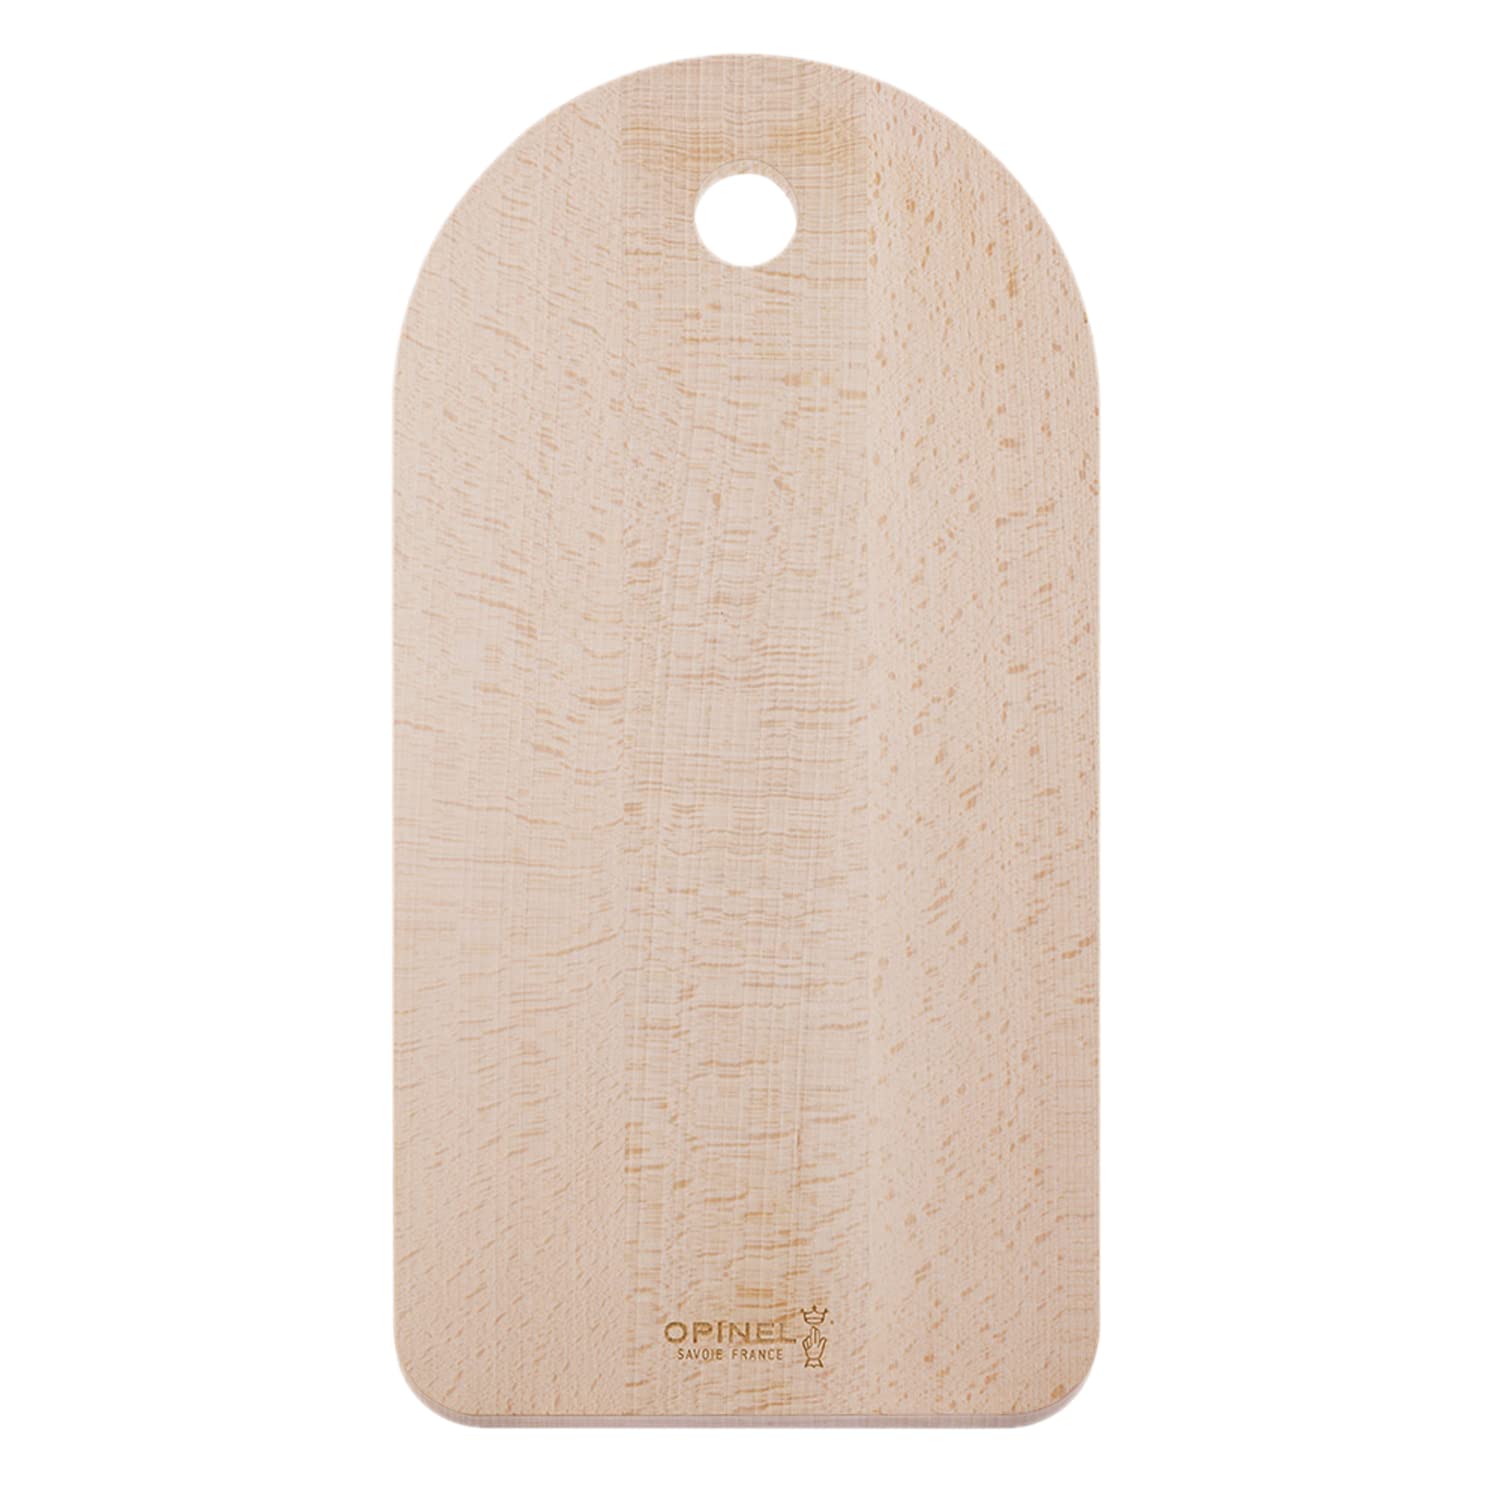 送料無料Opinel X Big Game Beech Wood Cutting Board Lightweight and Minimalist Design Indoor or Outdoor Kitchen Cooking